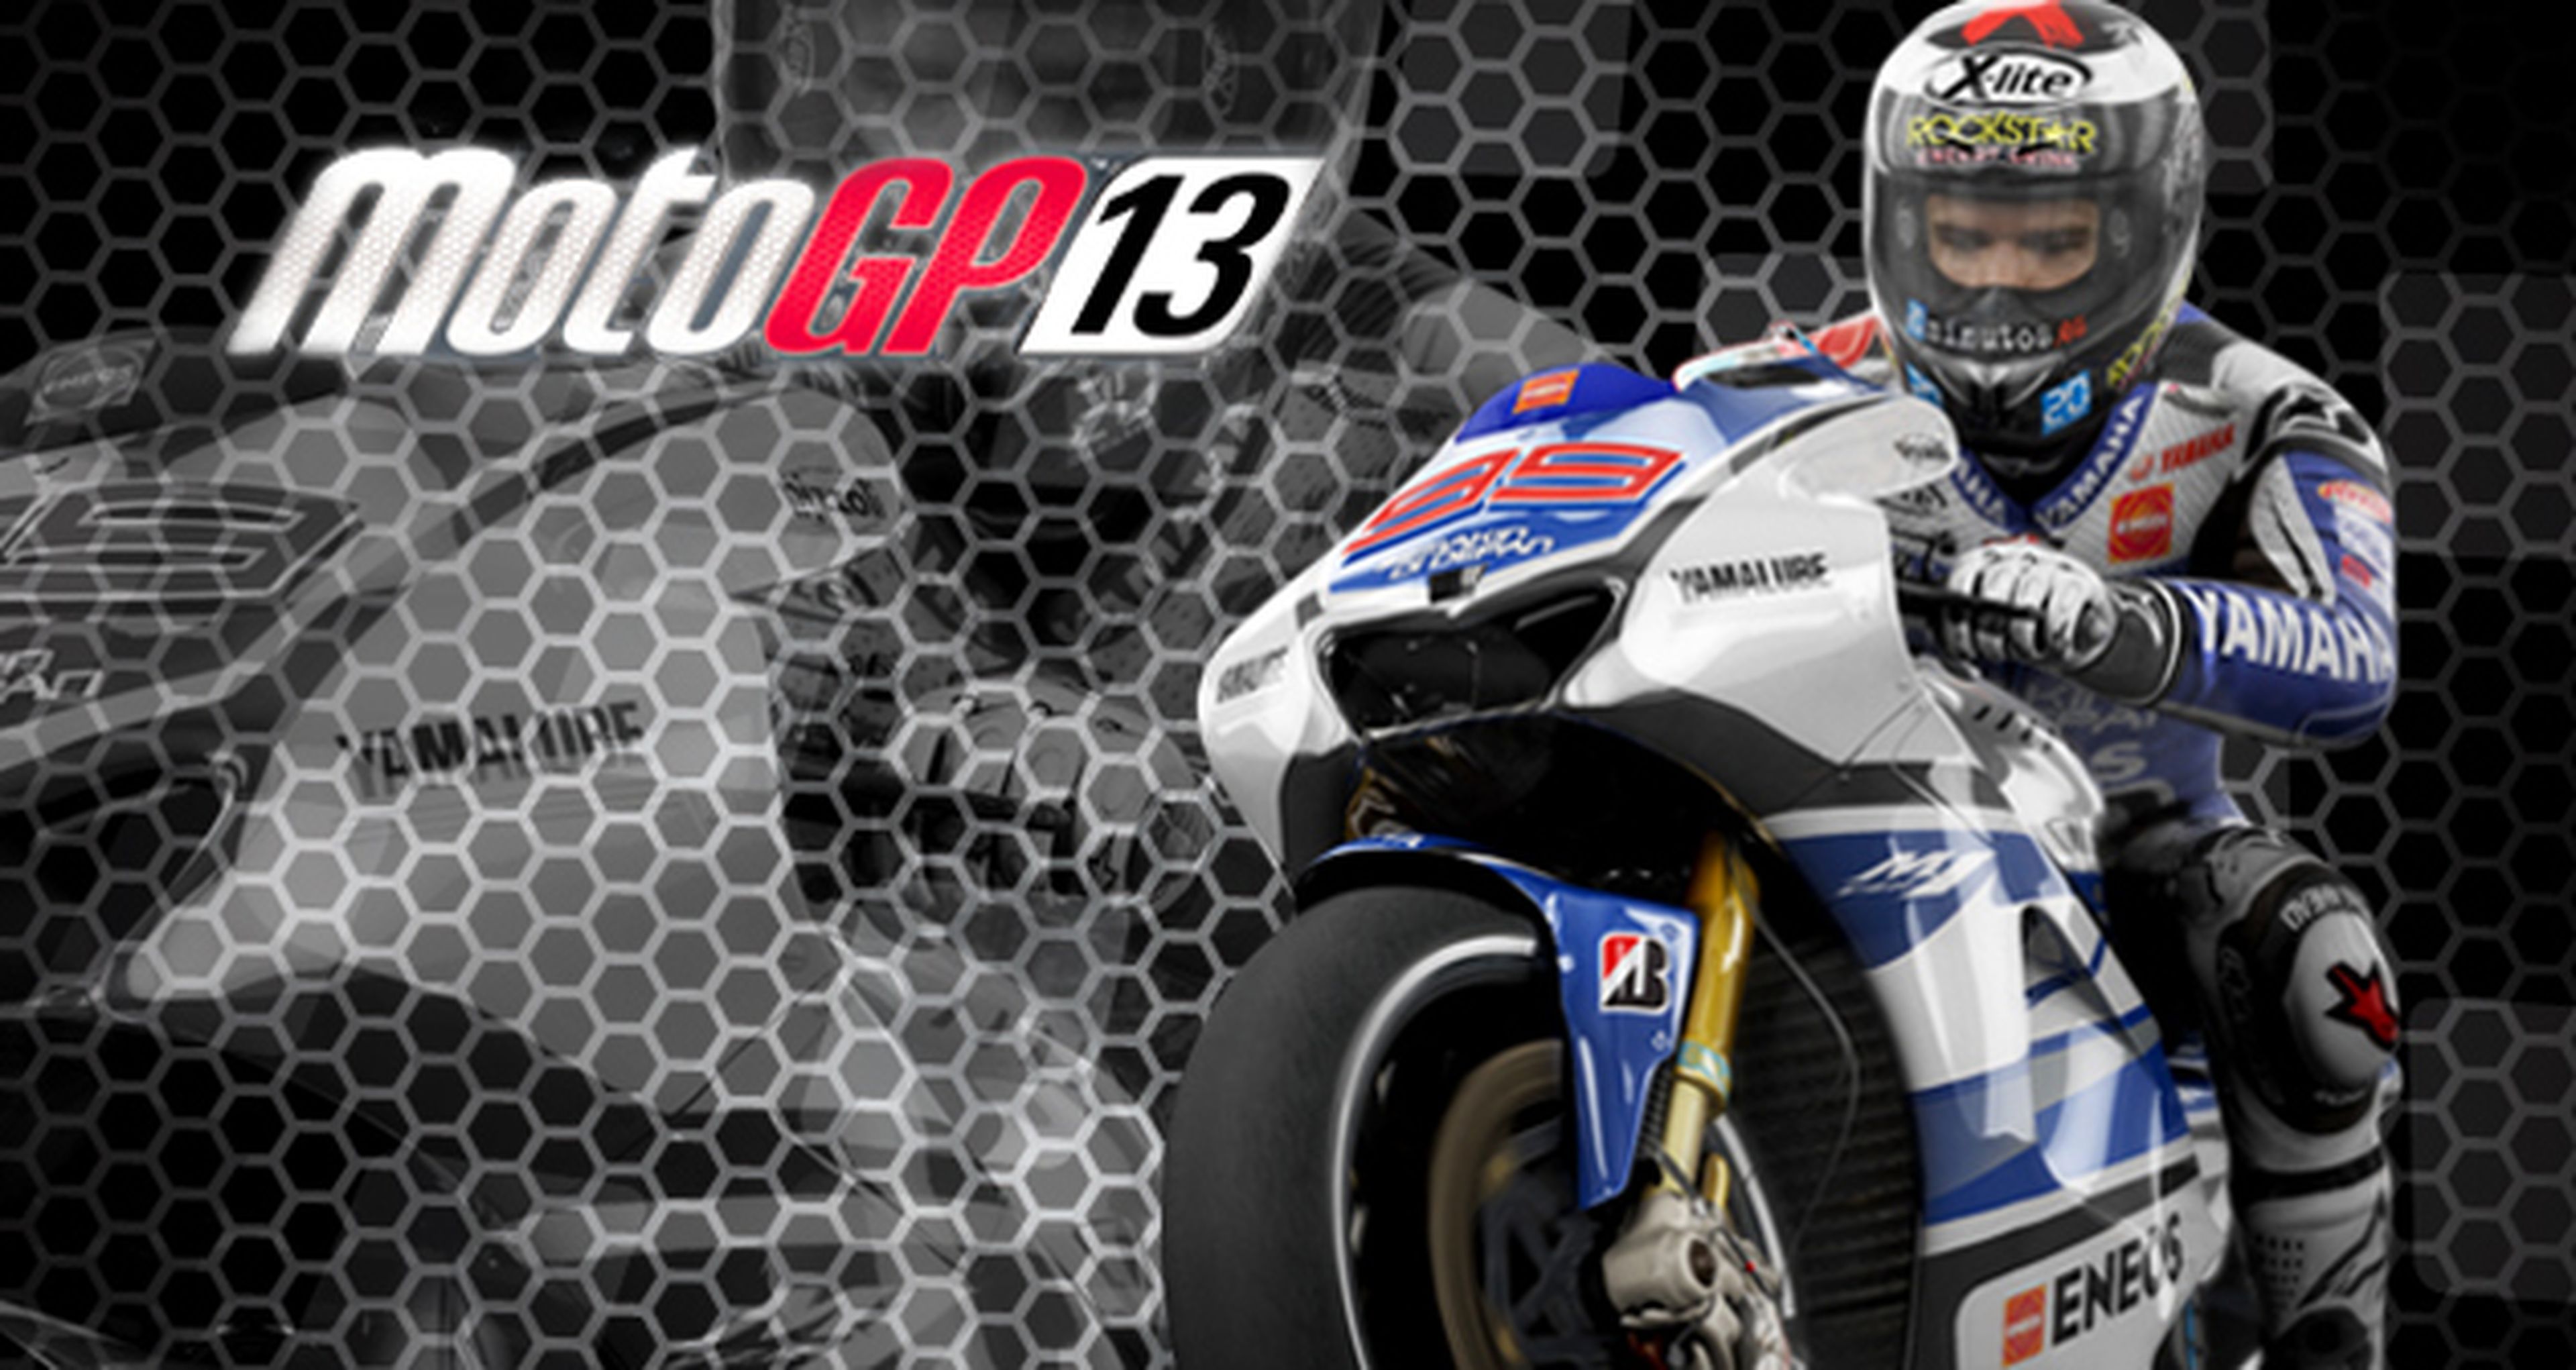 Análisis de MotoGP 13 para PS3, 360 y PC